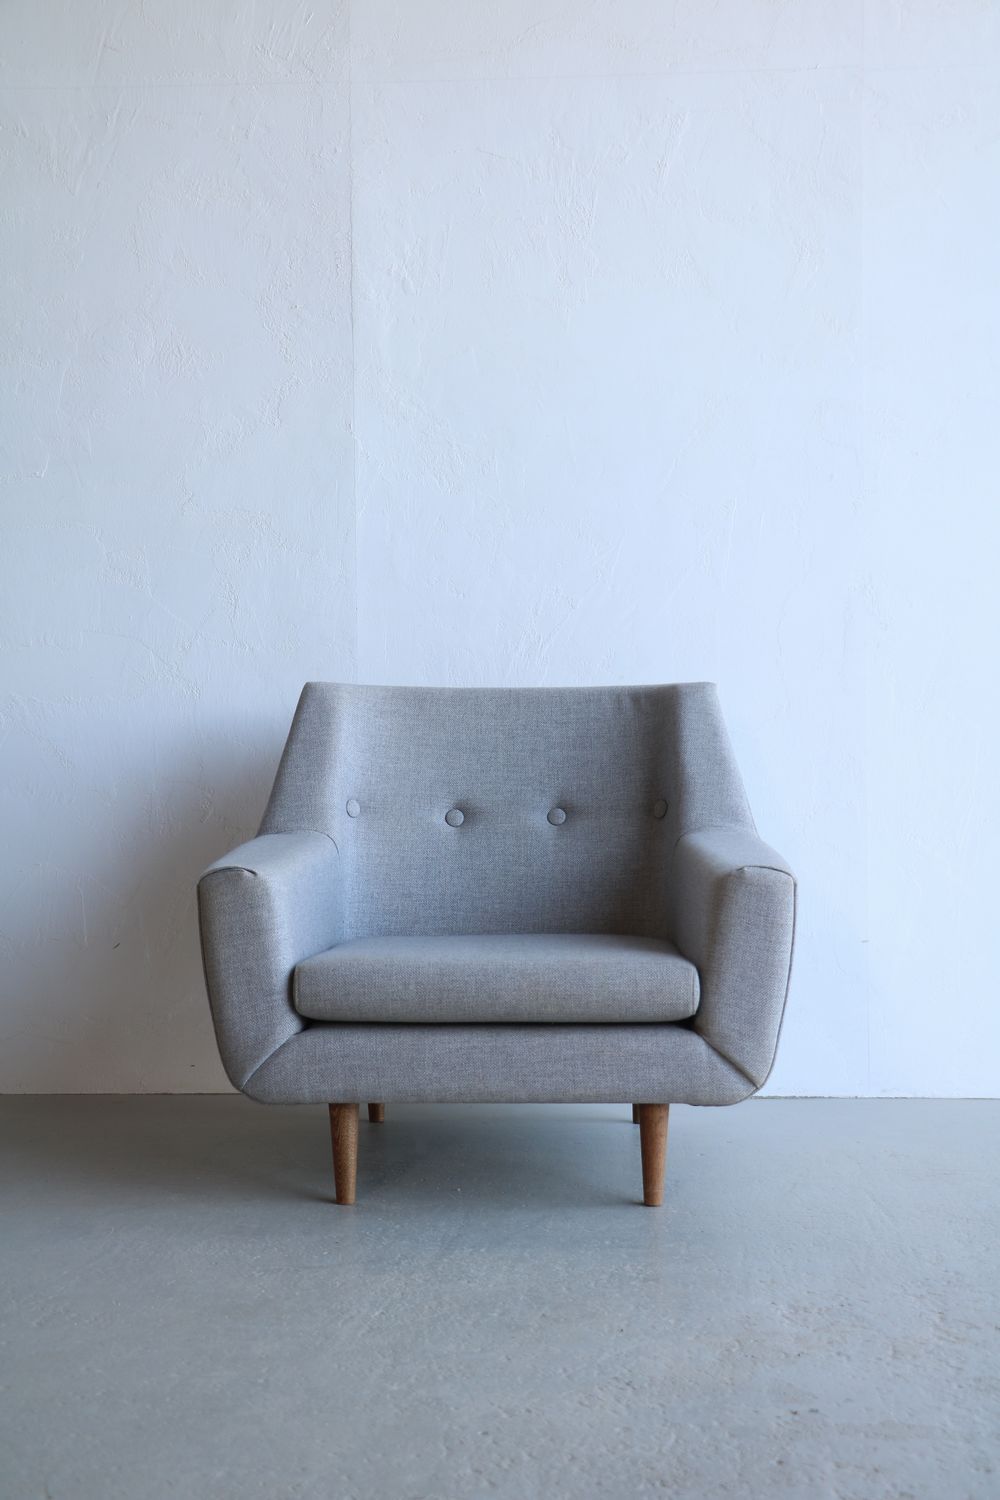 Settimio Single Sofa